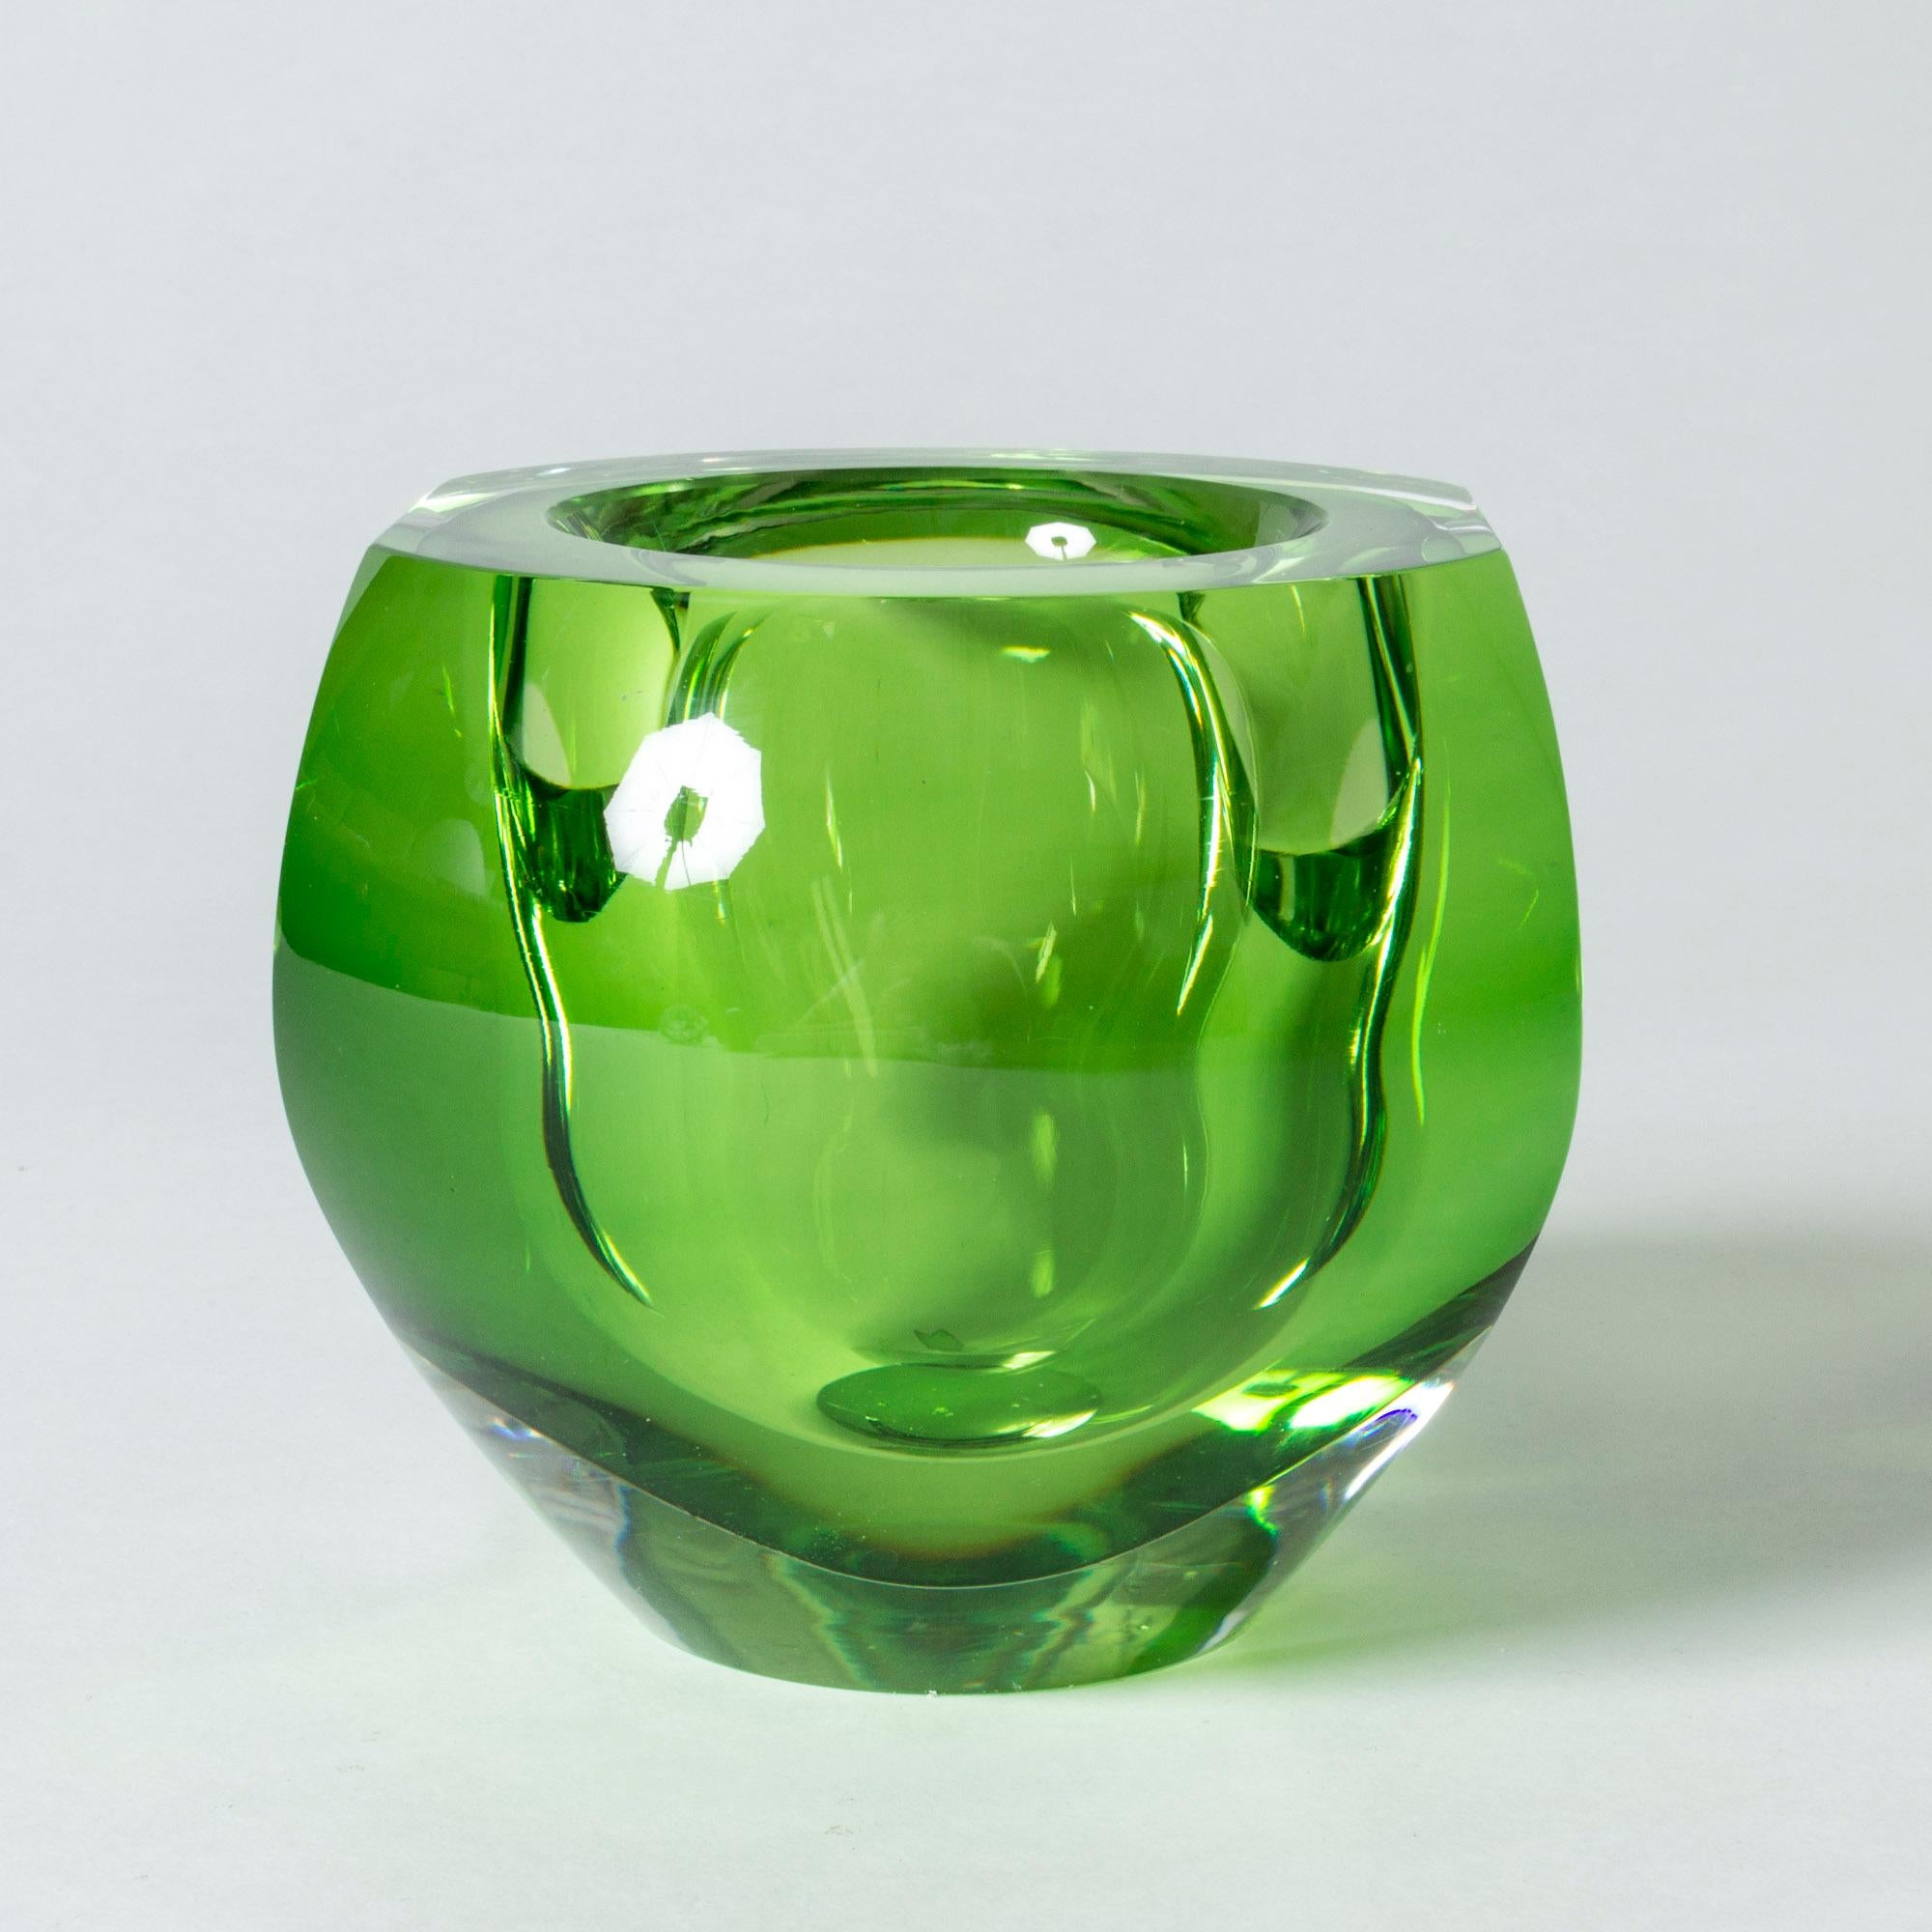 Coupe en cristal de Mona Morales-Schildt, d'une grande qualité et d'une couleur saisissante, vert vénéneux. Design/One dramatique avec un jeu de lumière dans le verre épais.